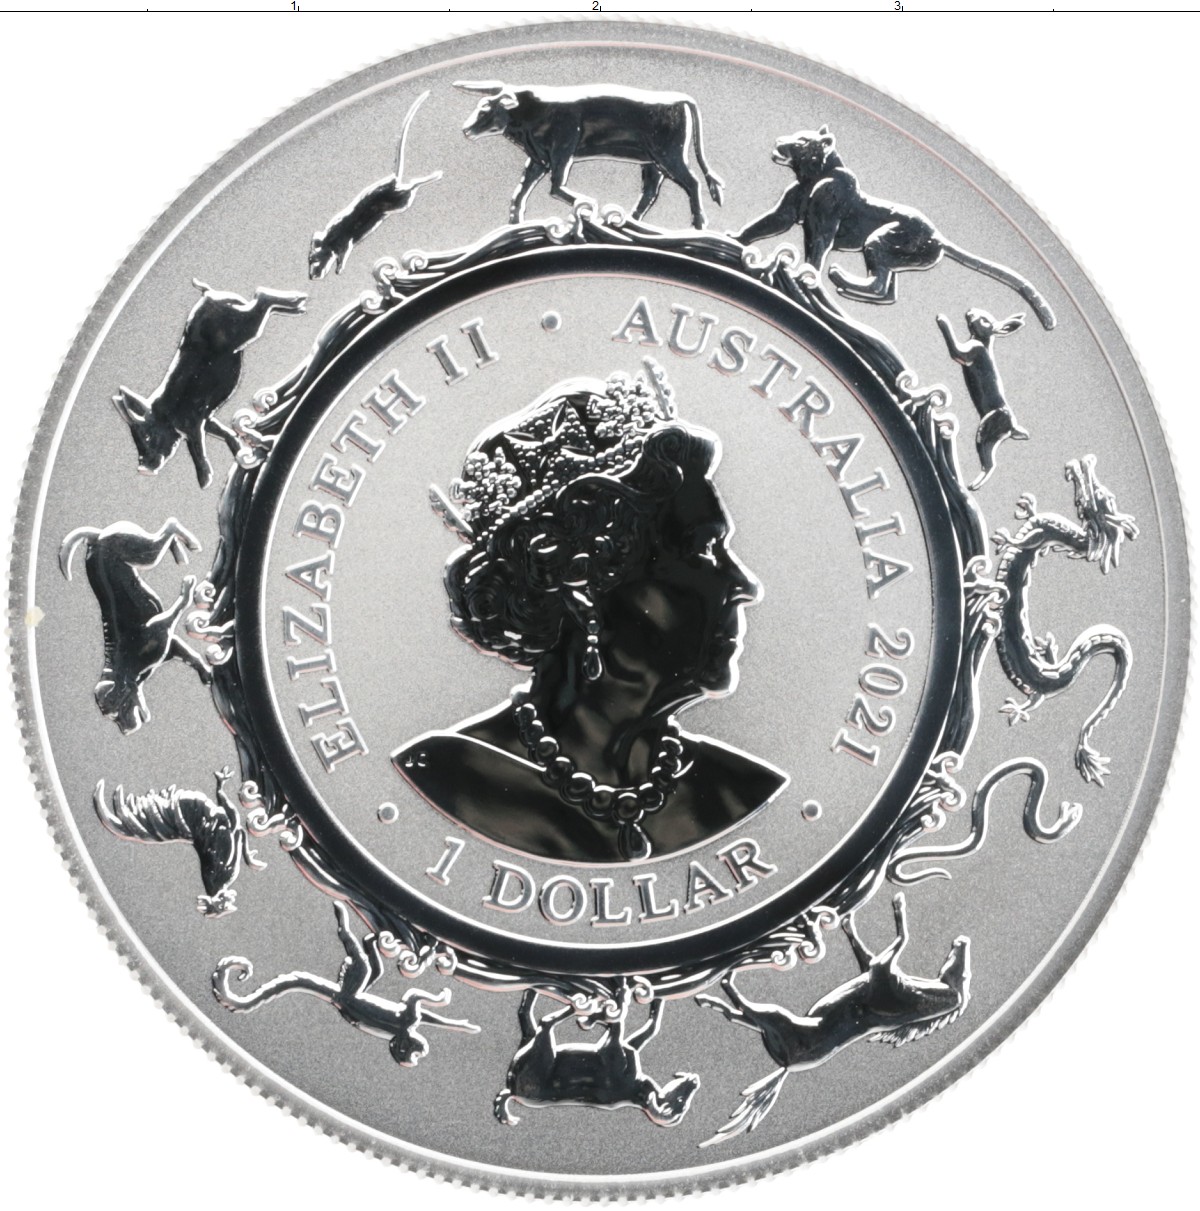 1 доллар 2021 года. 1 Доллар (1 унция серебра). Австралия.2006 карта. Монета Австралии бык 2021. Монета 1 доллар серебро 2021.